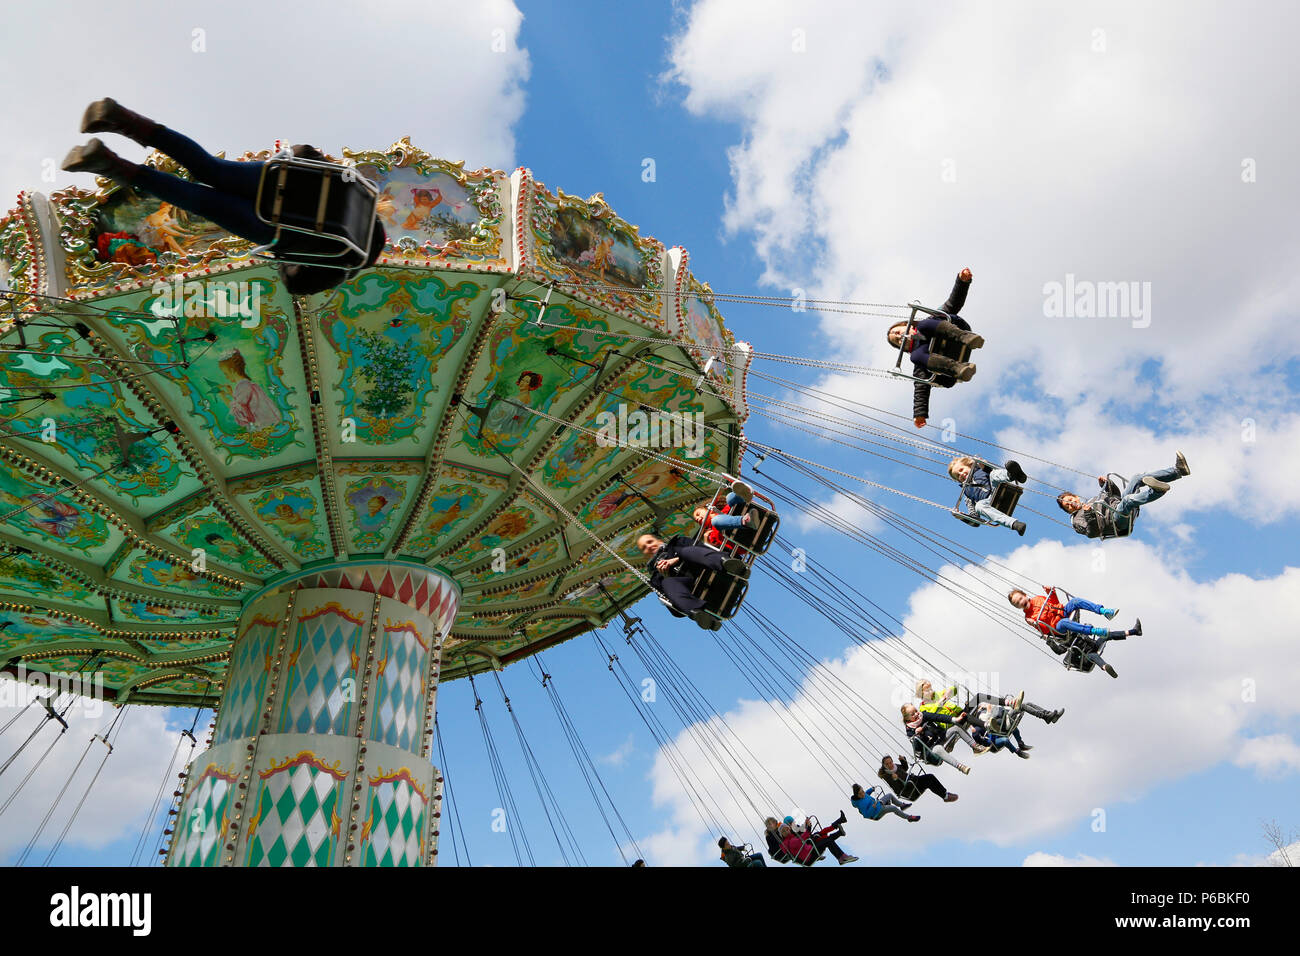 Parigi, sedicesimo quartiere. Il Bois de Boulogne. Giardino di acclimatazione. Cavallo-marcia le sedie volantes. Adulti e bambini in treno. Foto Stock